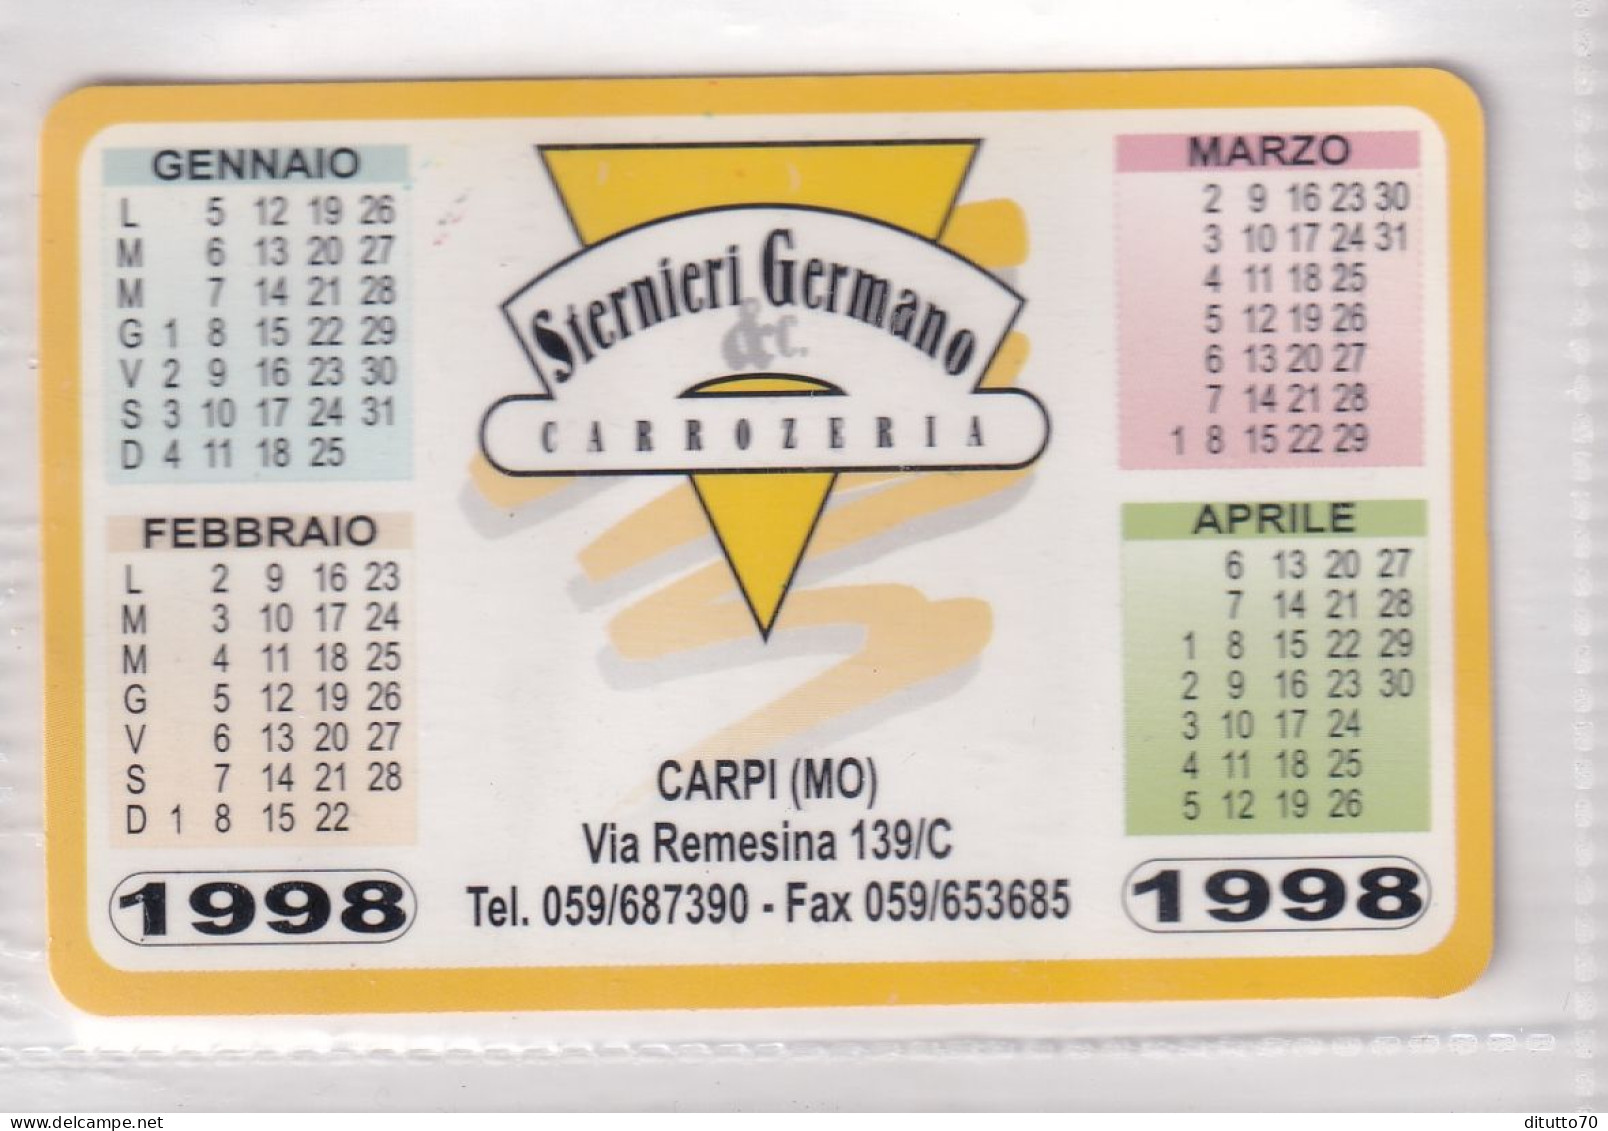 Calendarietto - Carrozzeria - Siernieri Ermano - Carpi - Modena - Anno 1998 - Small : 1991-00